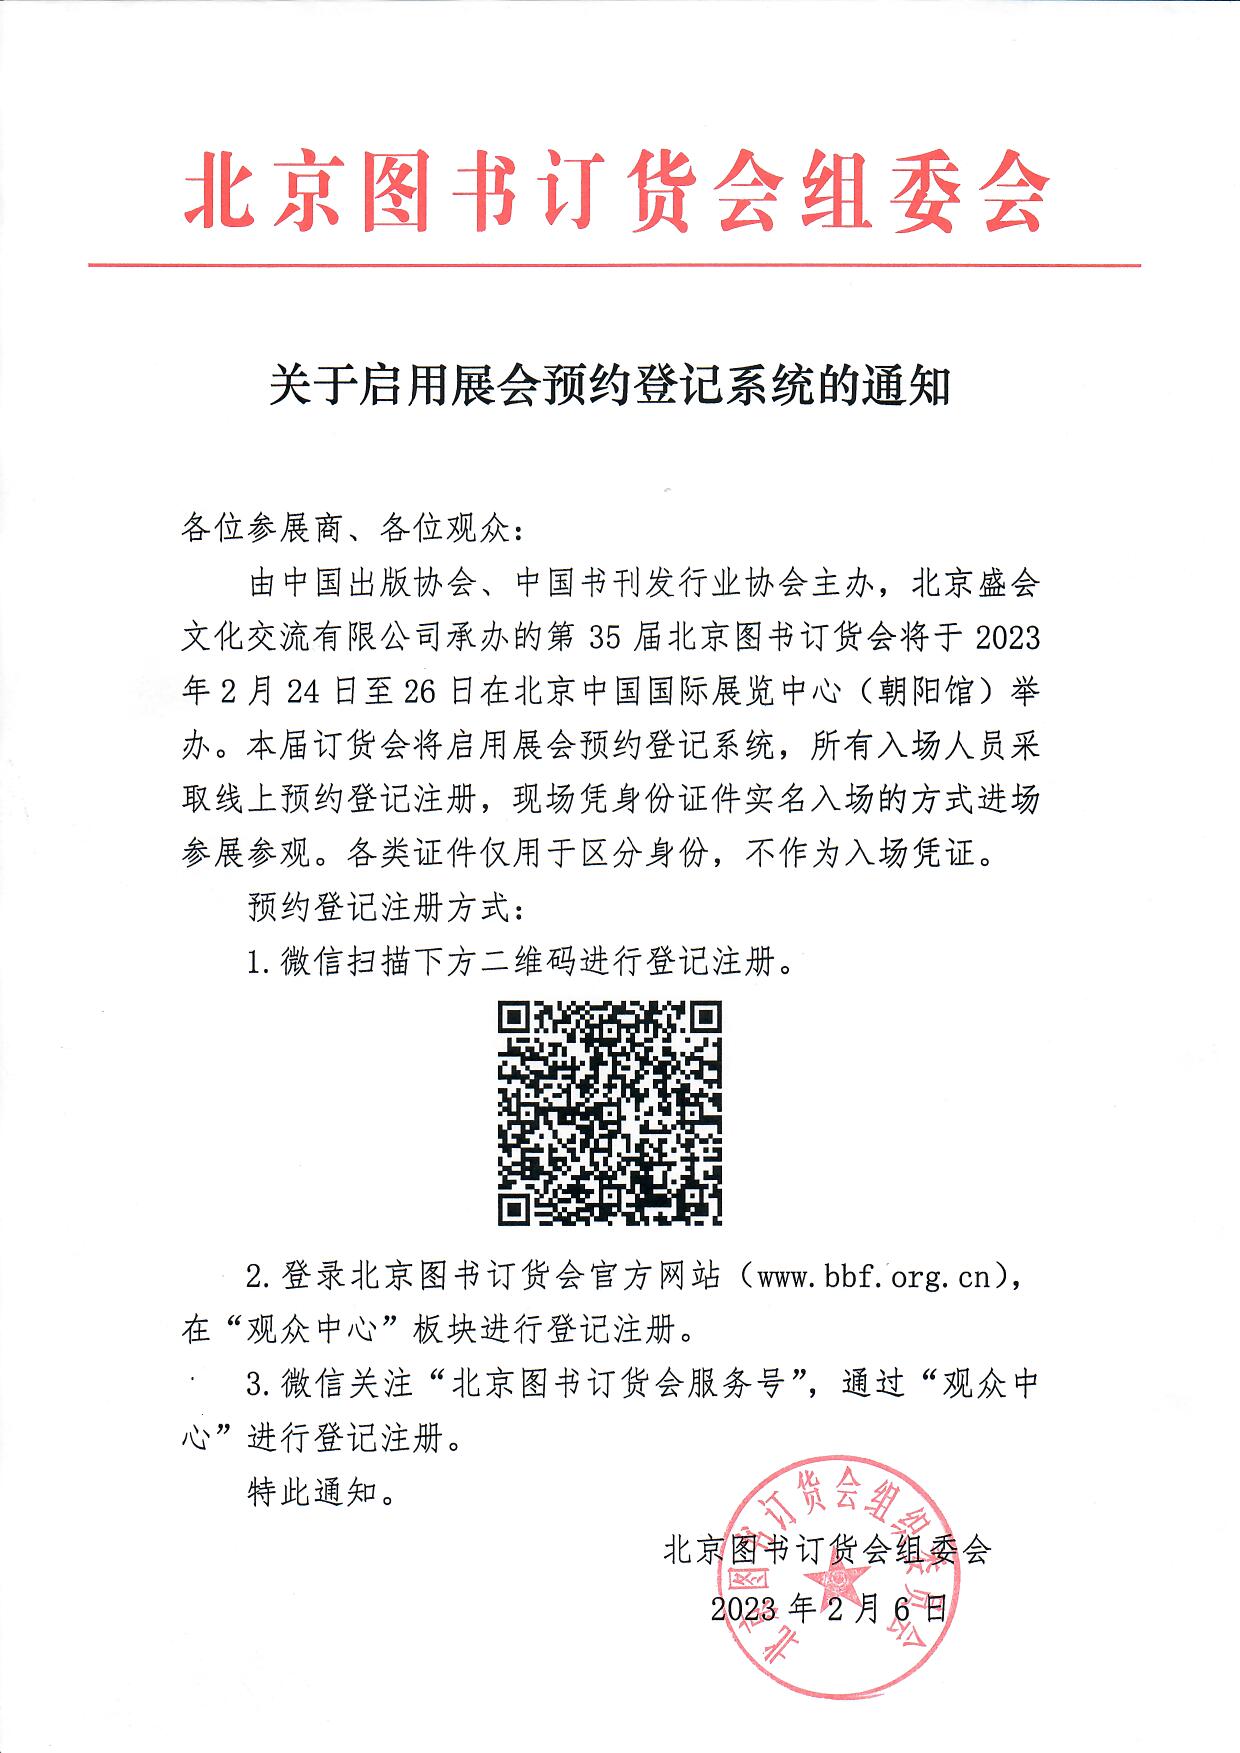 第35届北京图书订货会关于启用展会预约登记系统的通知.jpg